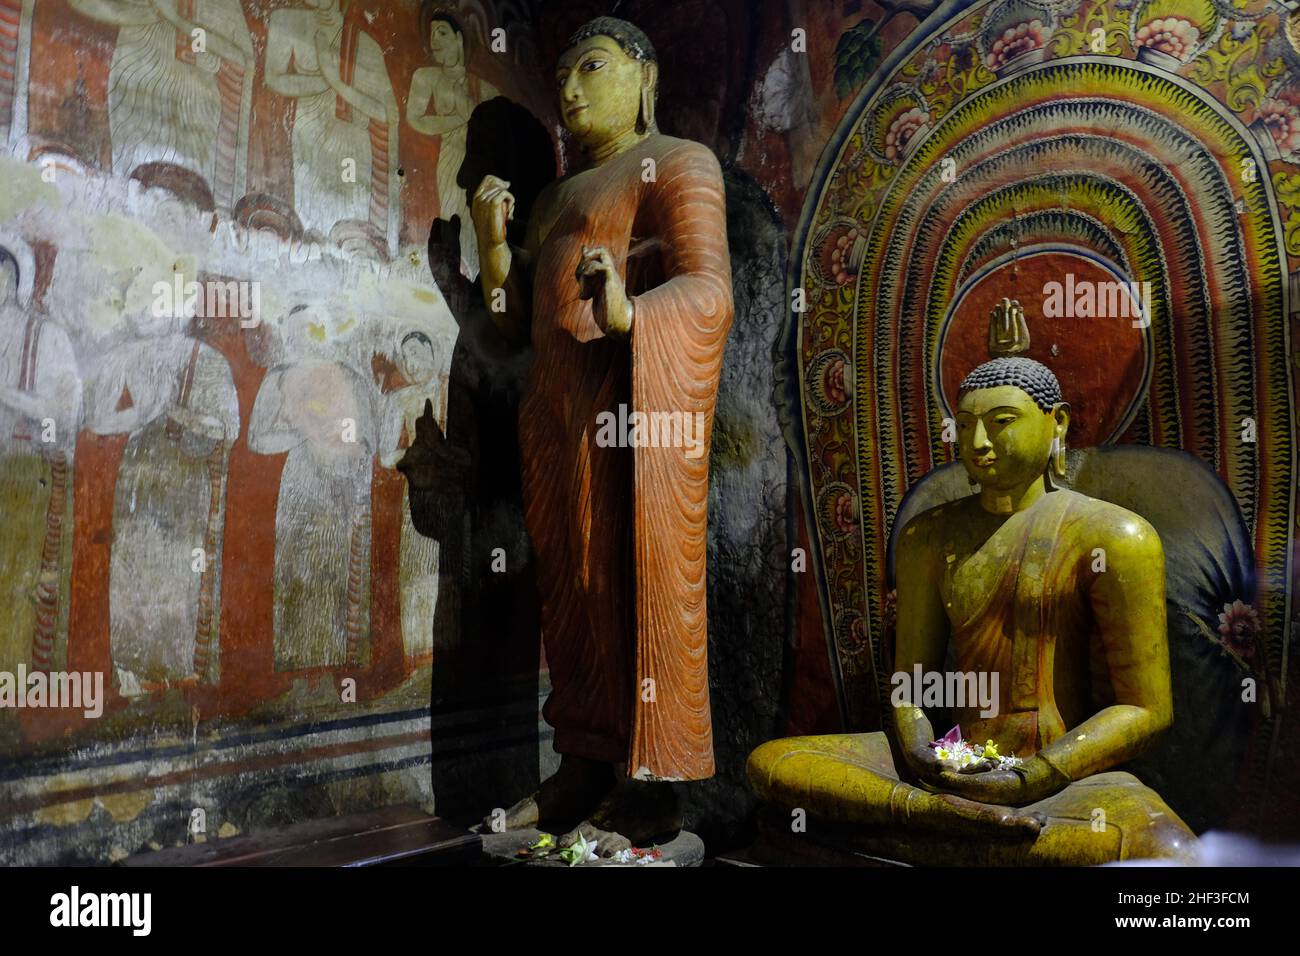 Sri Lanka Dambulla - Dambulla Höhlentempel - Goldener Tempel von Dambulla Skulpturen von Buddha Stockfoto